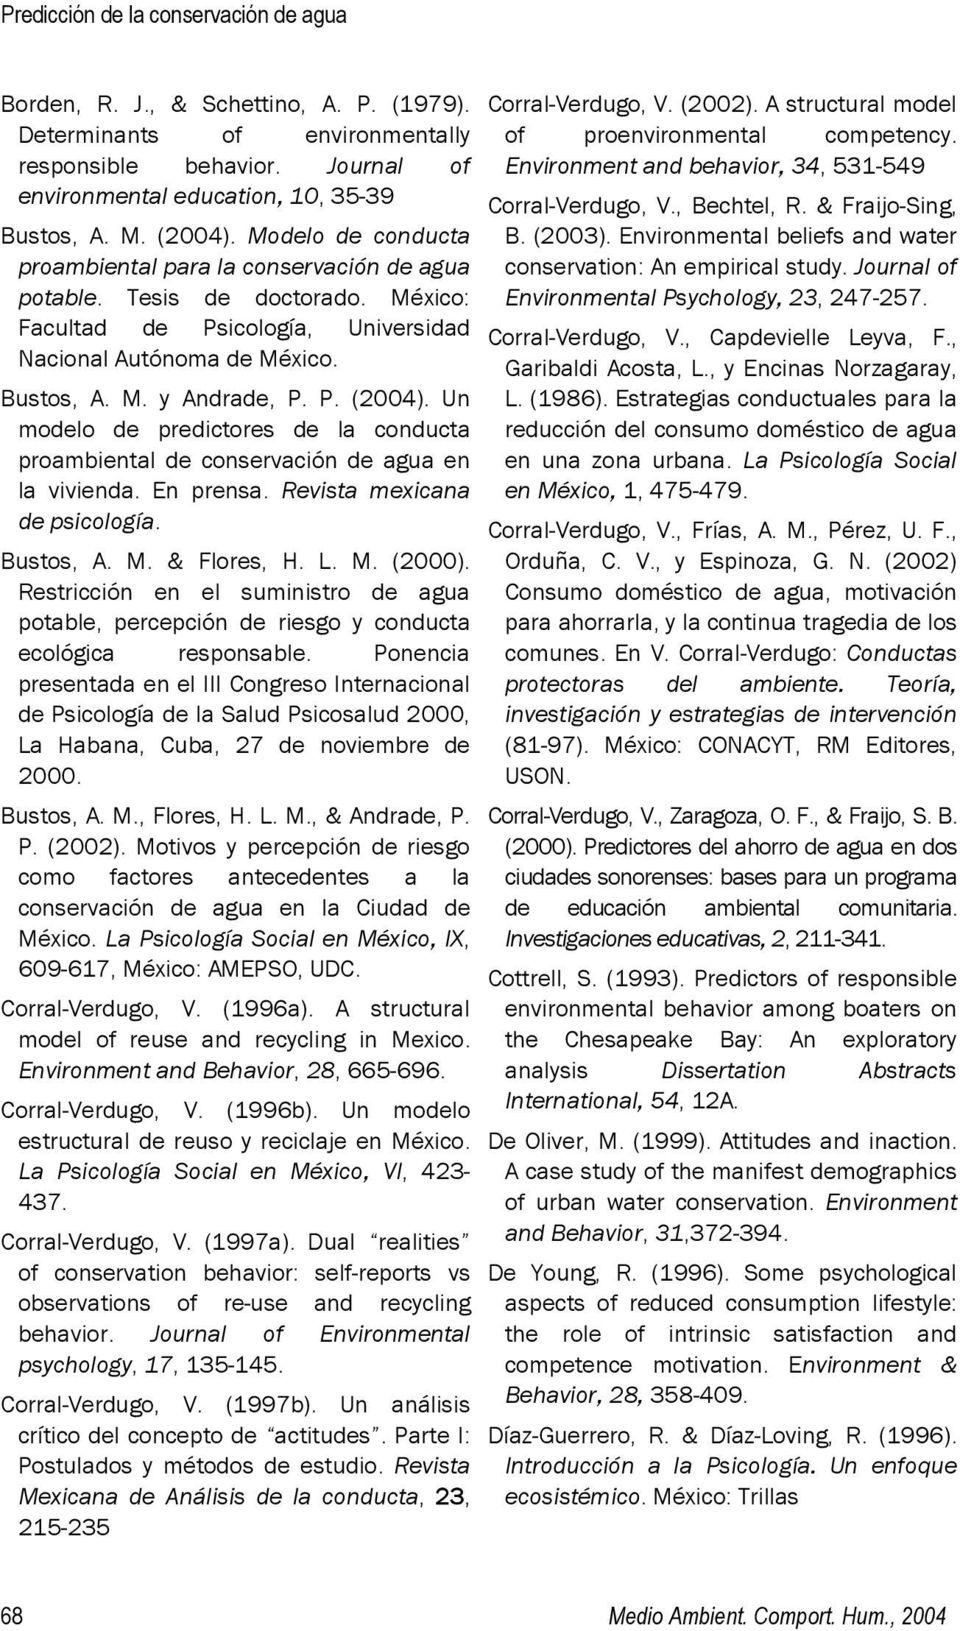 P. (2004). Un modelo de predictores de la conducta proambiental de conservación de agua en la vivienda. En prensa. Revista mexicana de psicología. Bustos, A. M. & Flores, H. L. M. (2000).